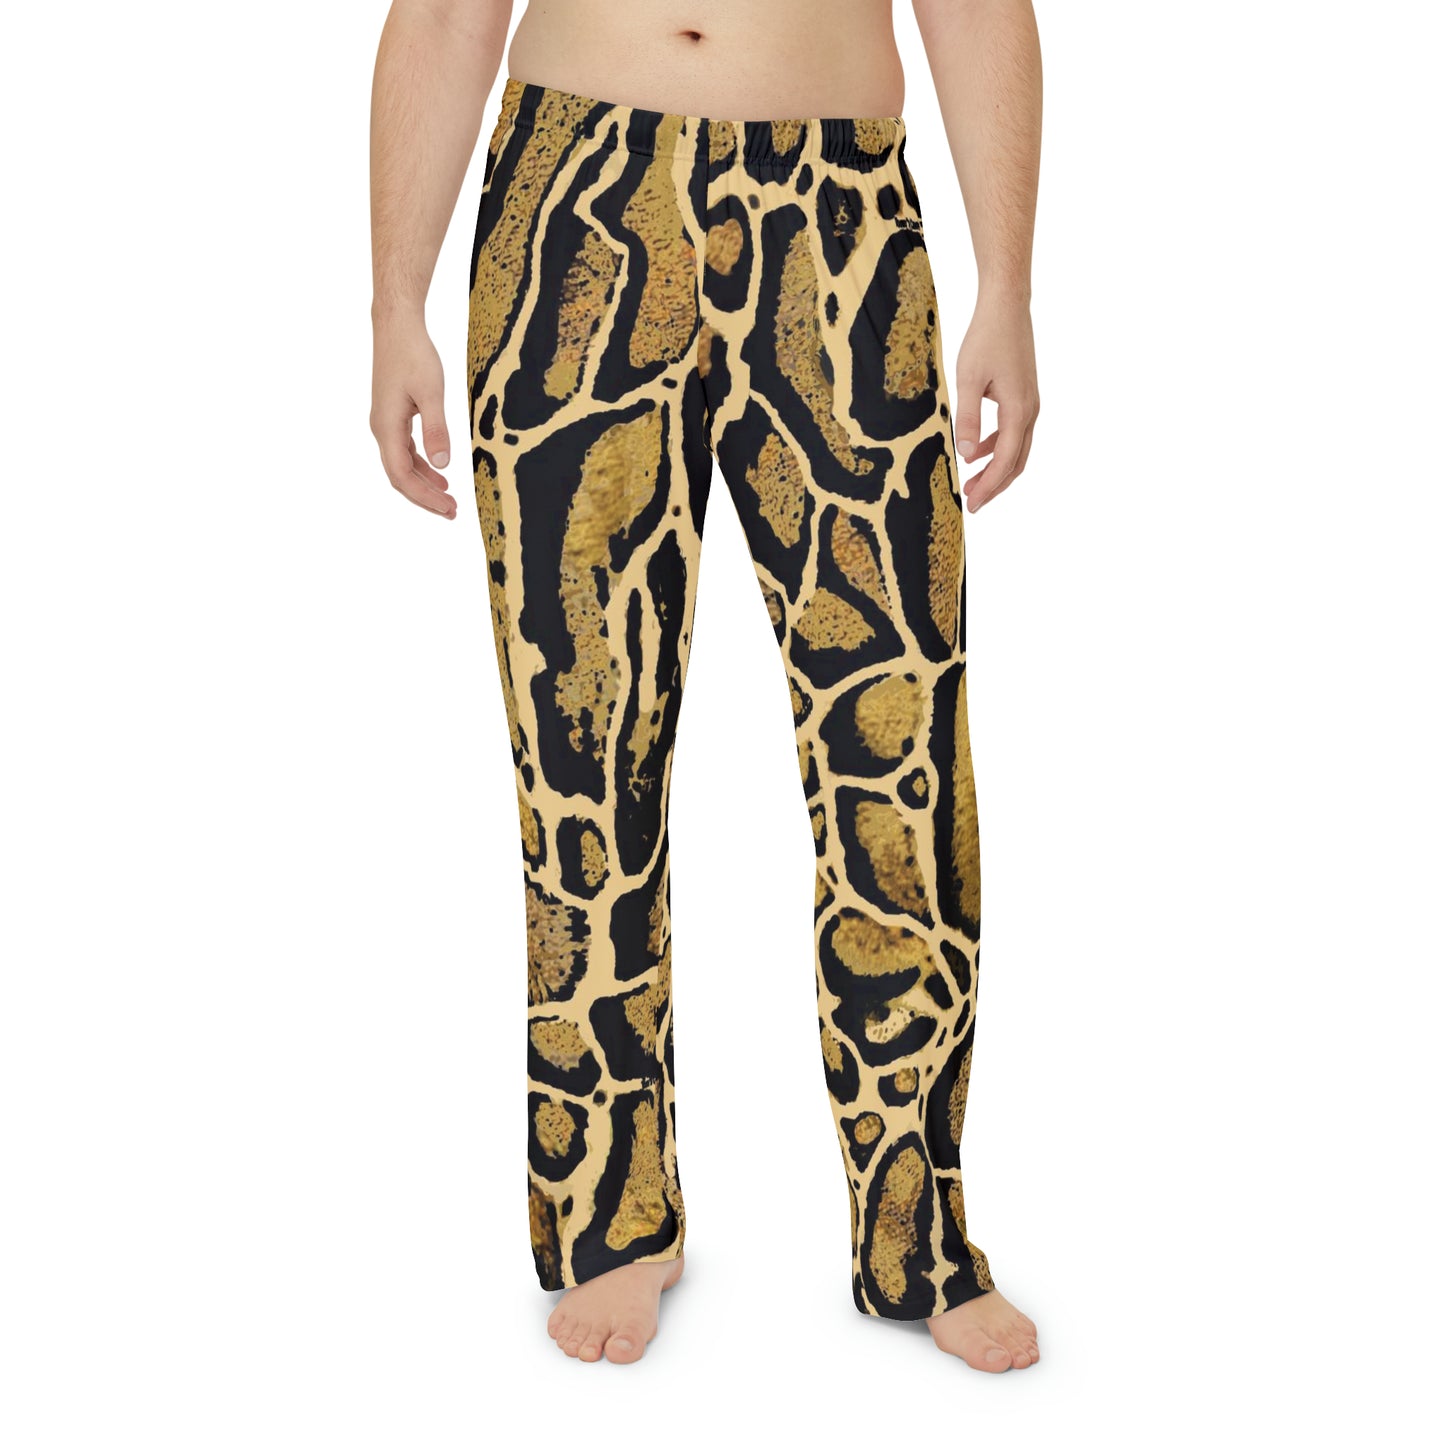 Clouded Leopard Men's Lounge Pants